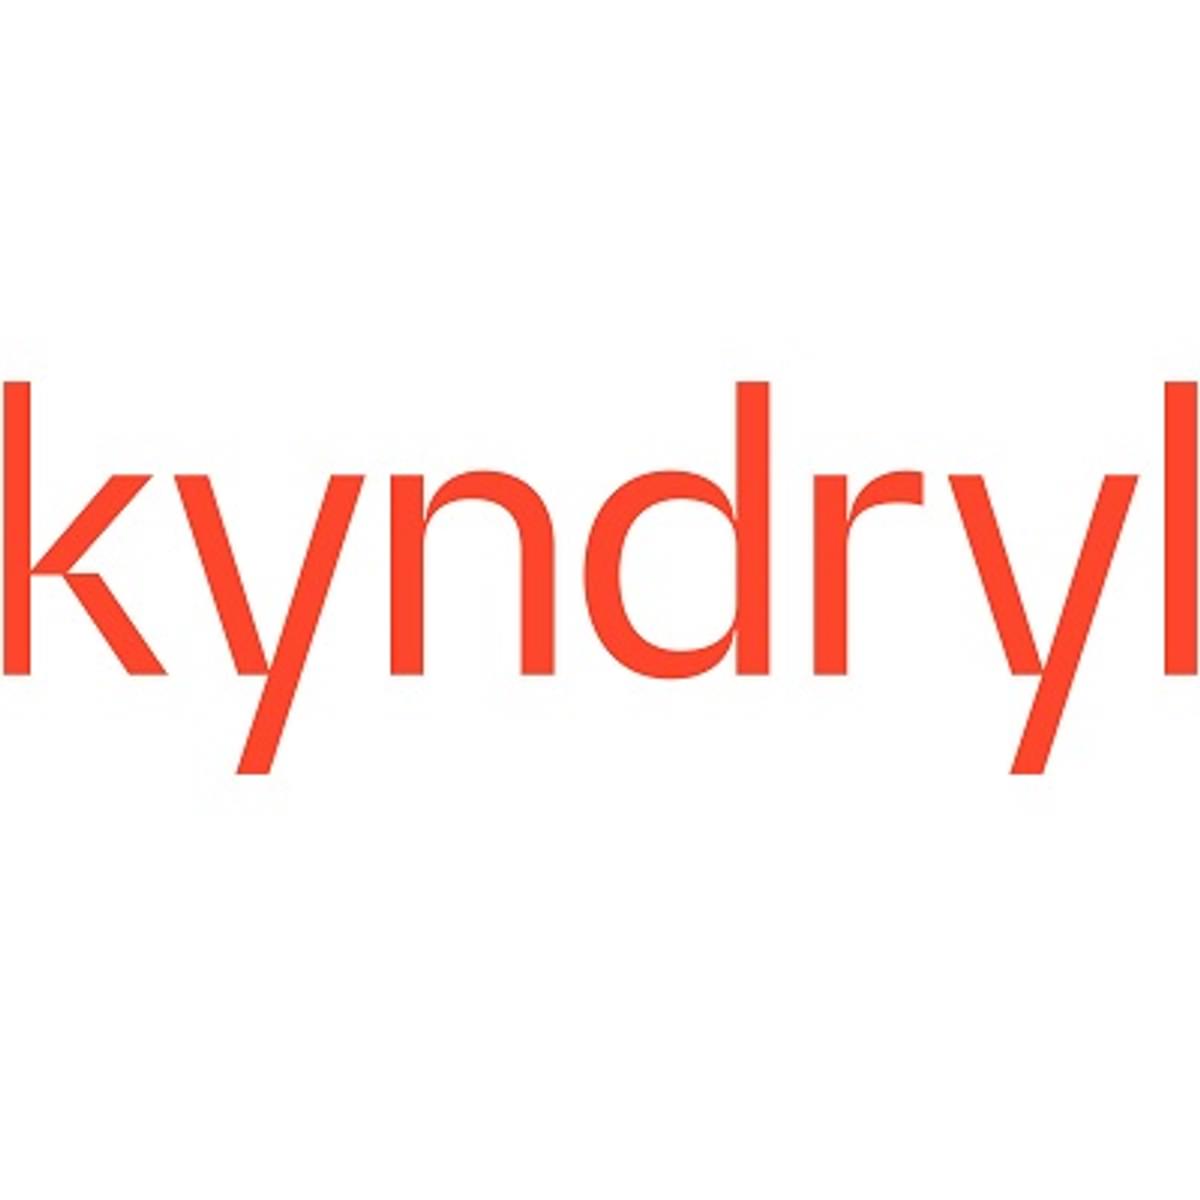 Kyndryl formeel afgesplitst van IBM: wat betekent dat? image